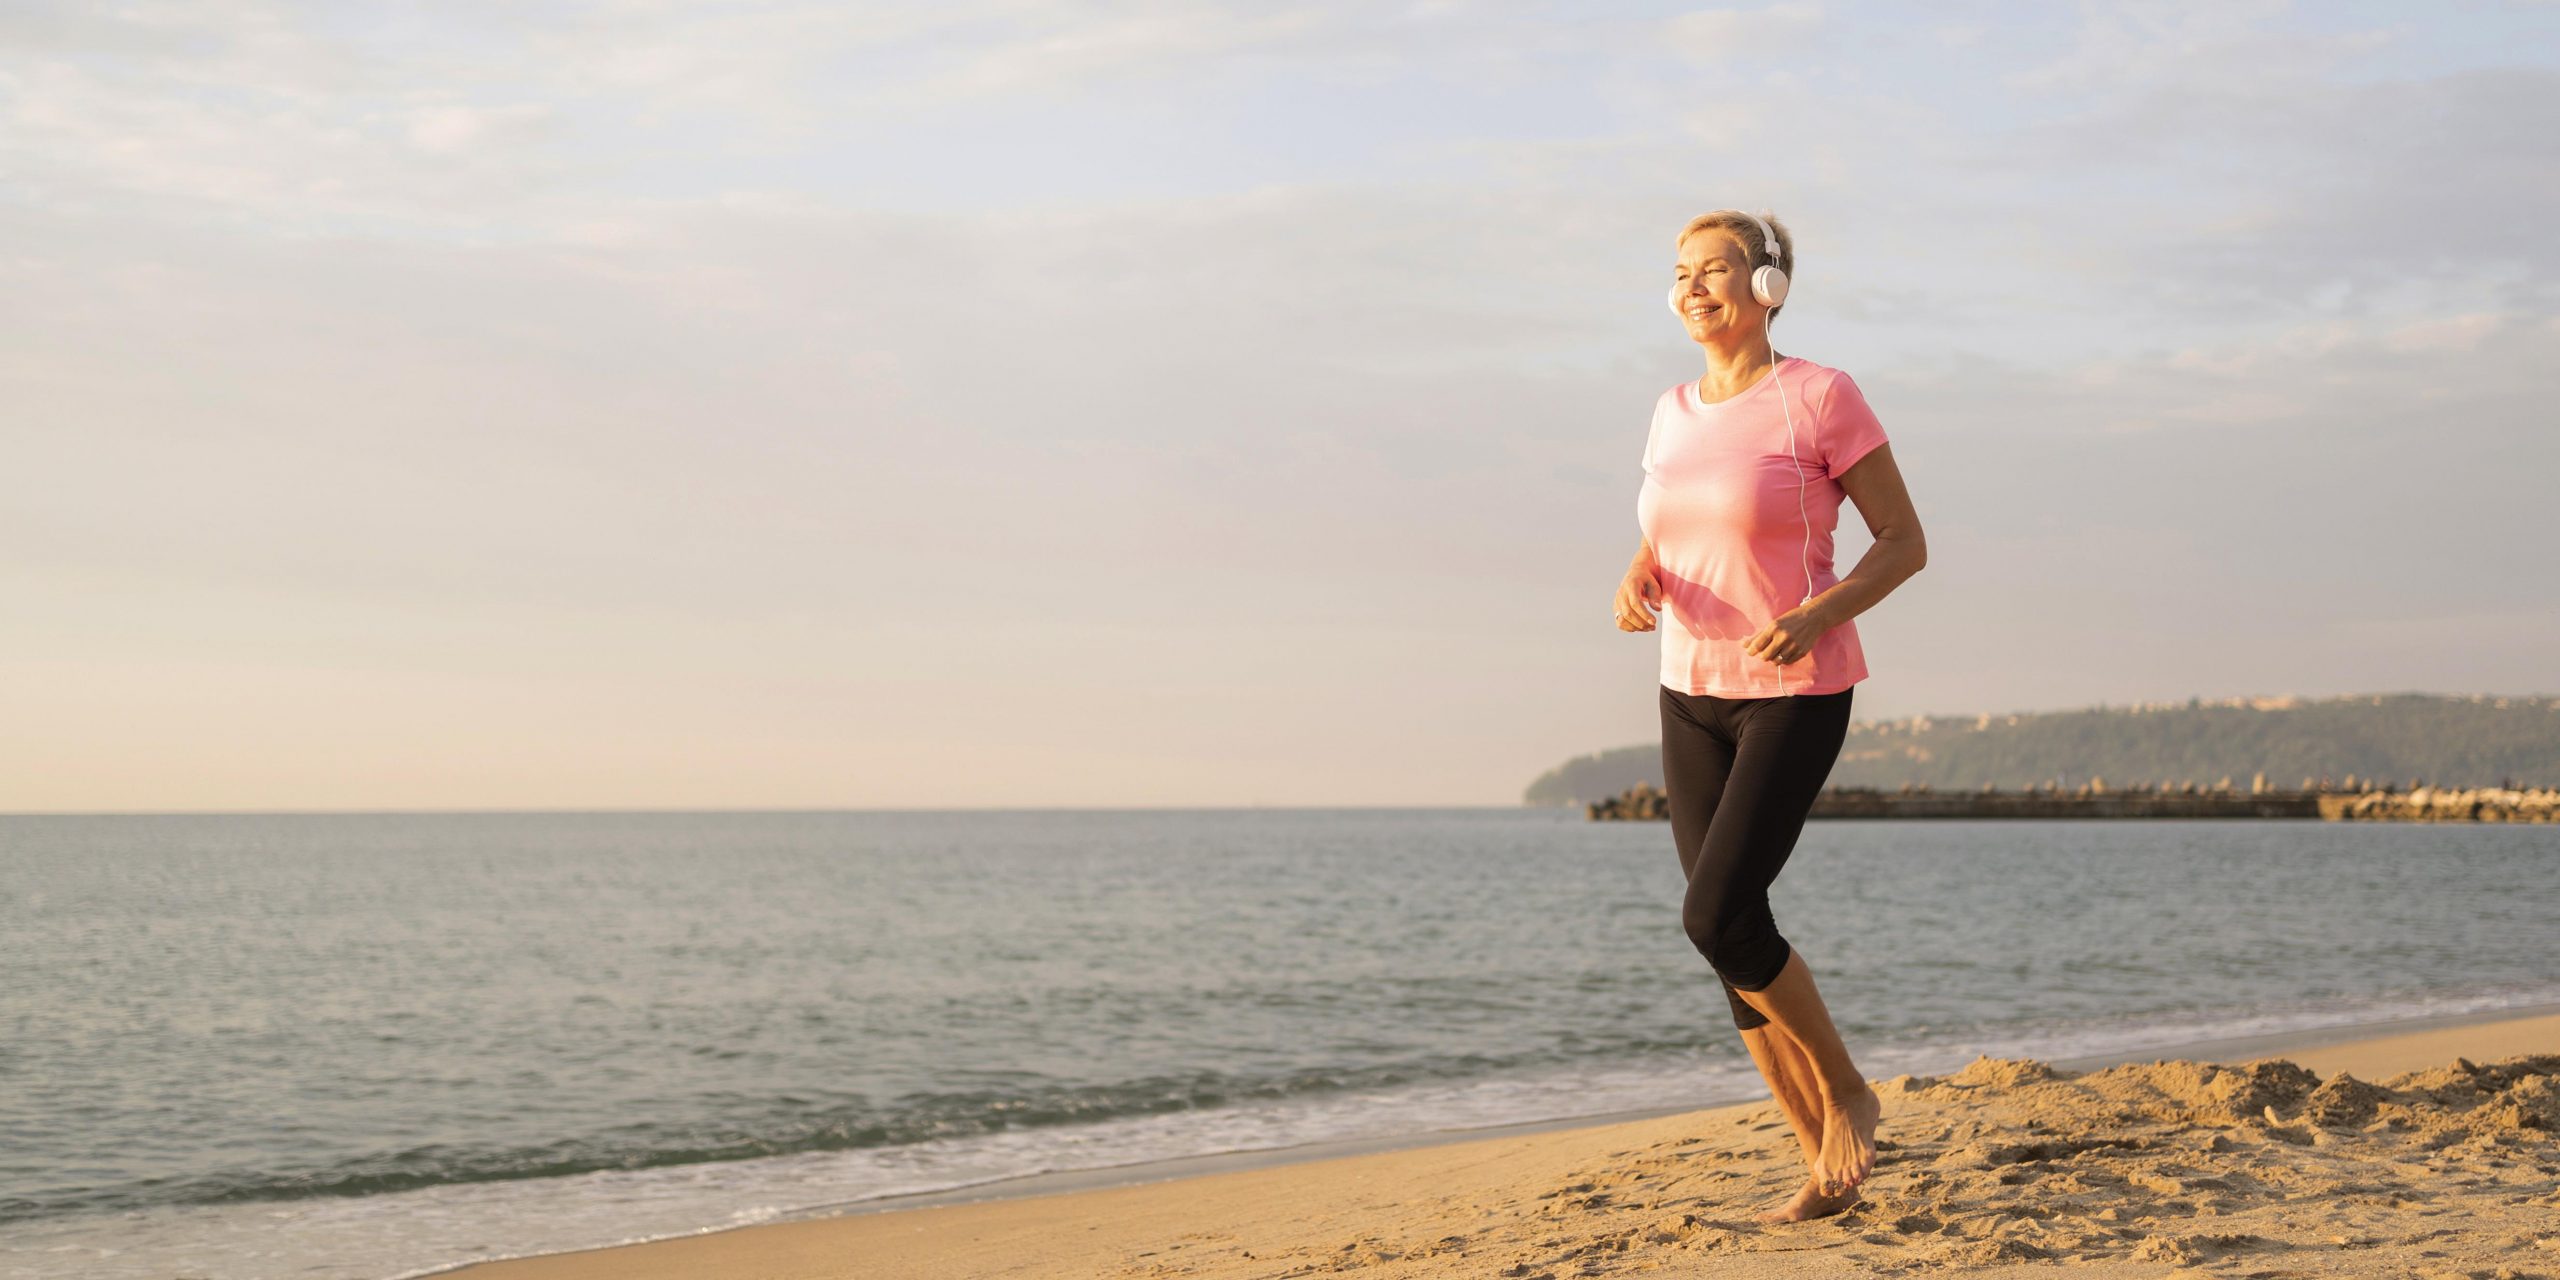 Osteoporose na menopausa, é comum? A suplementação de cálcio é indicada nessa fase?